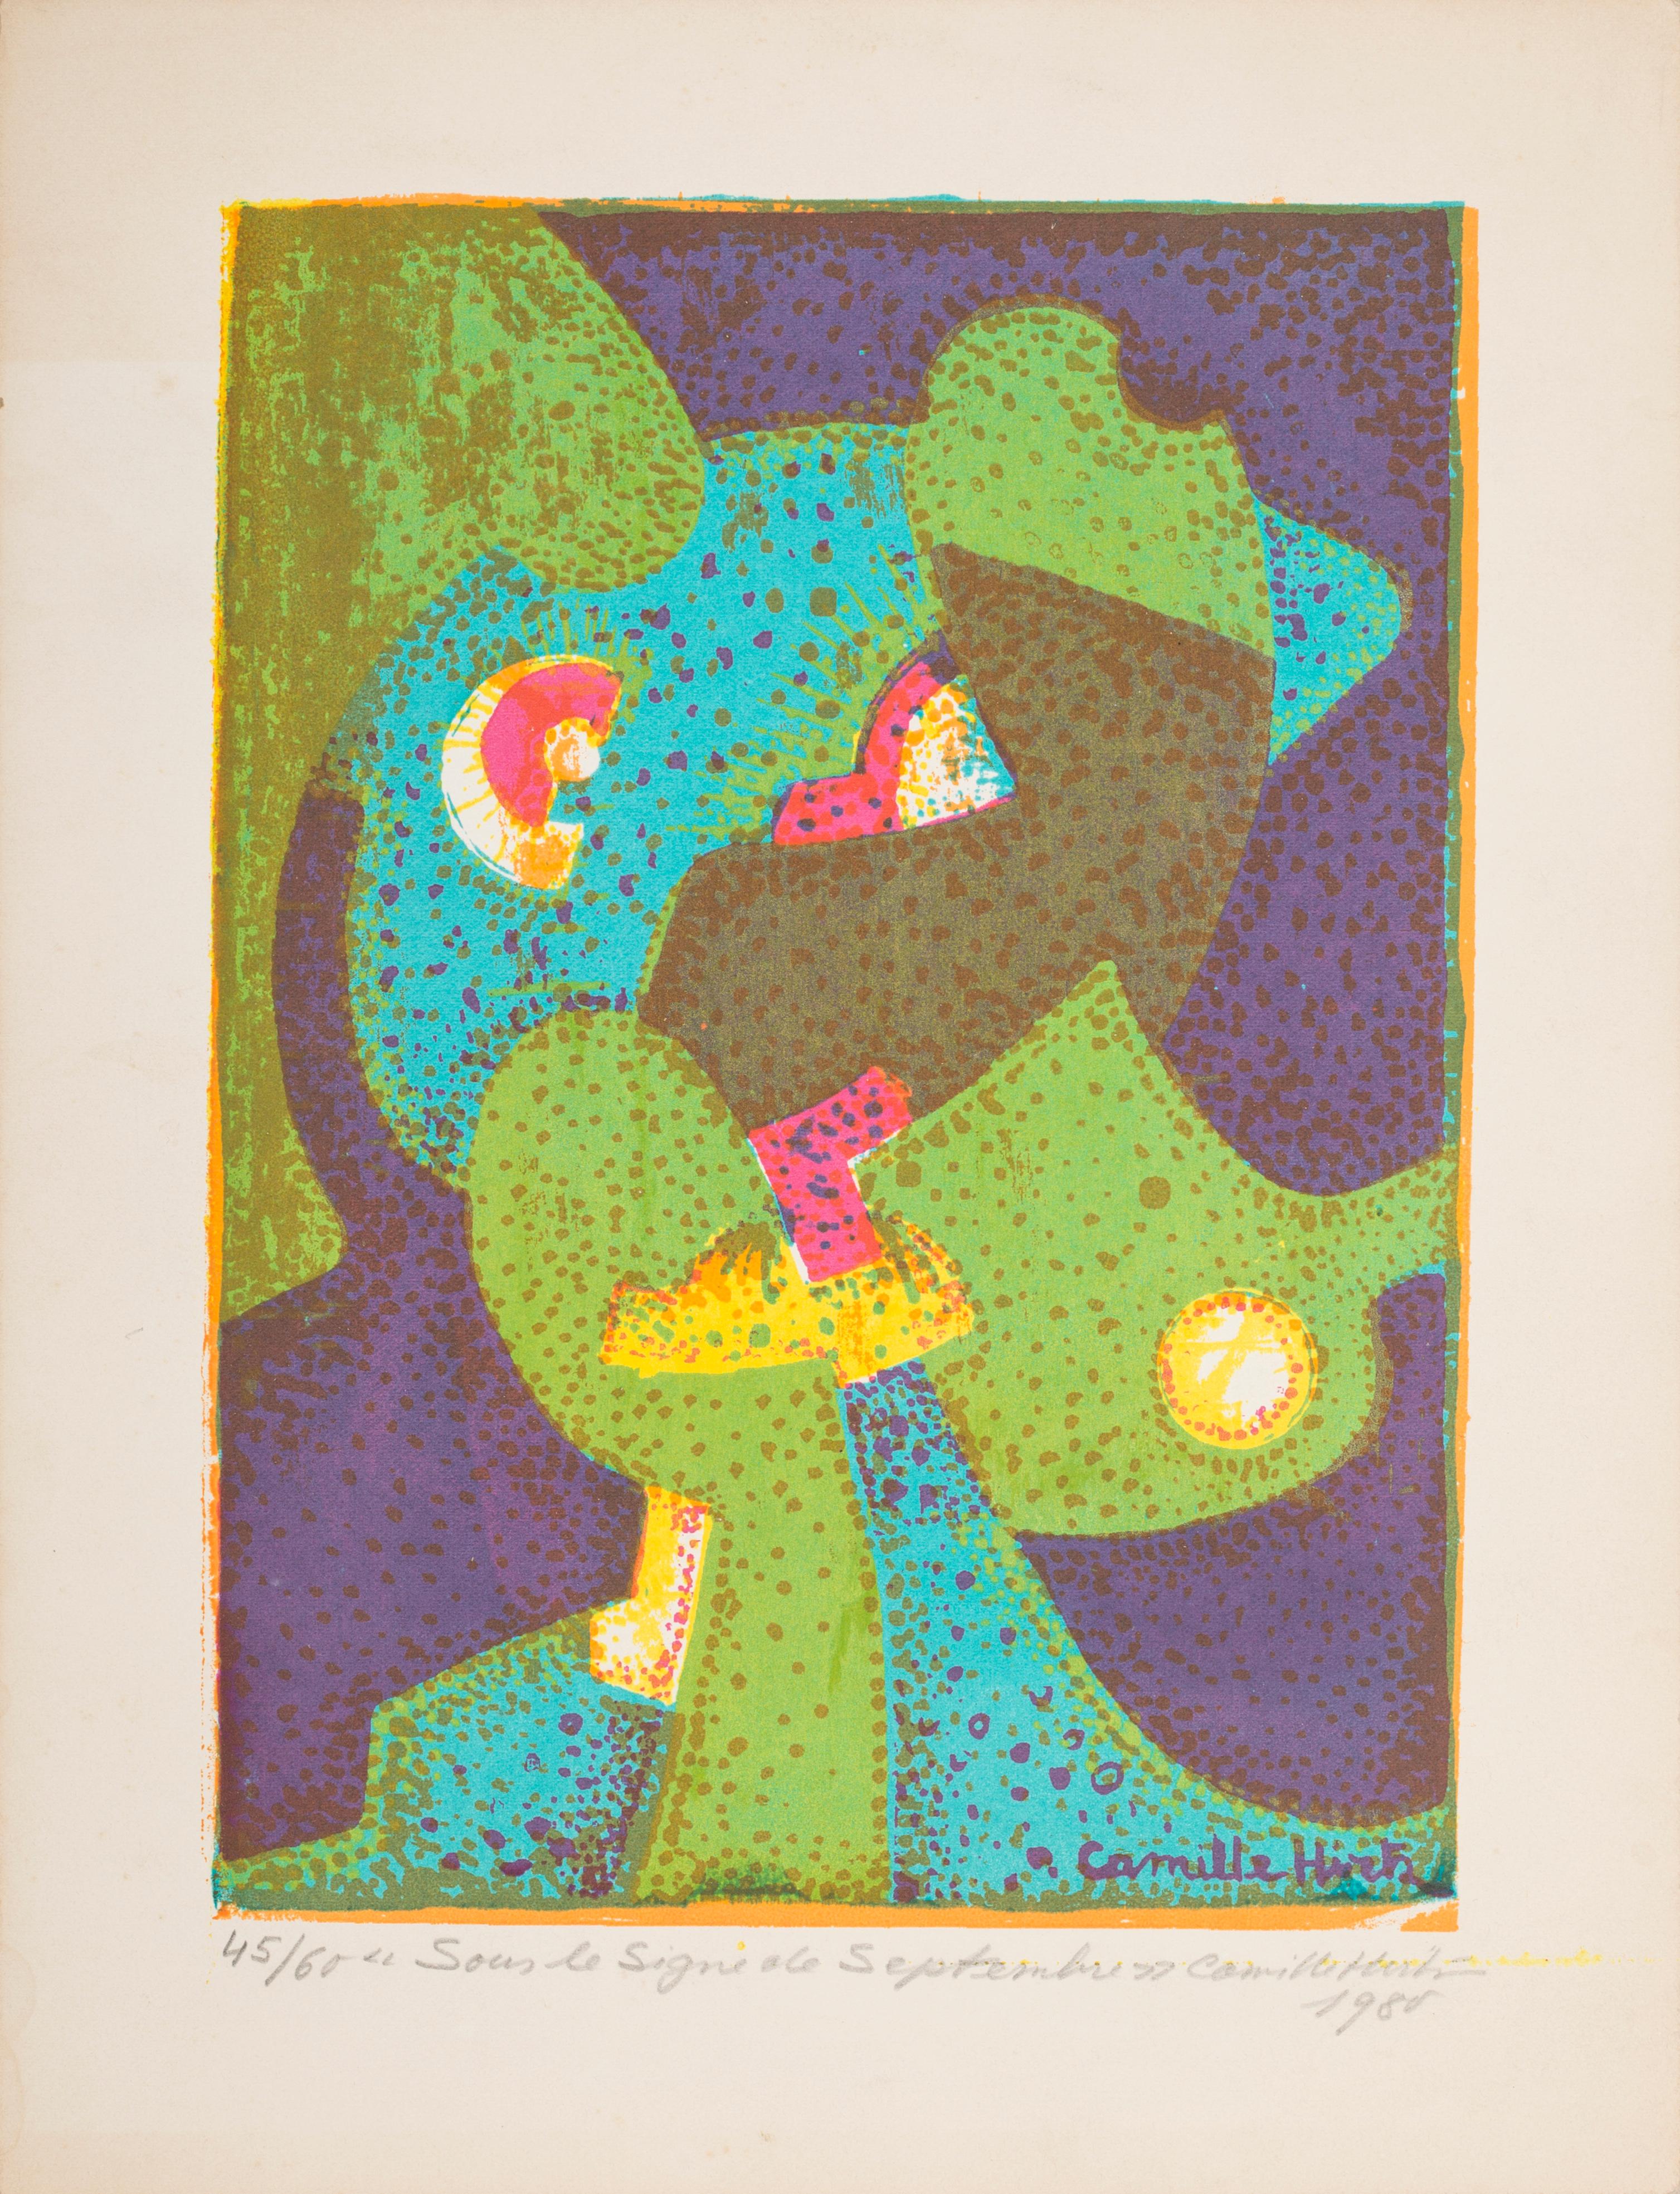 Camille Hirtz Abstract Print - Sous le Signe de Septembre - Original Screen Print by C. Hirtz - 1980